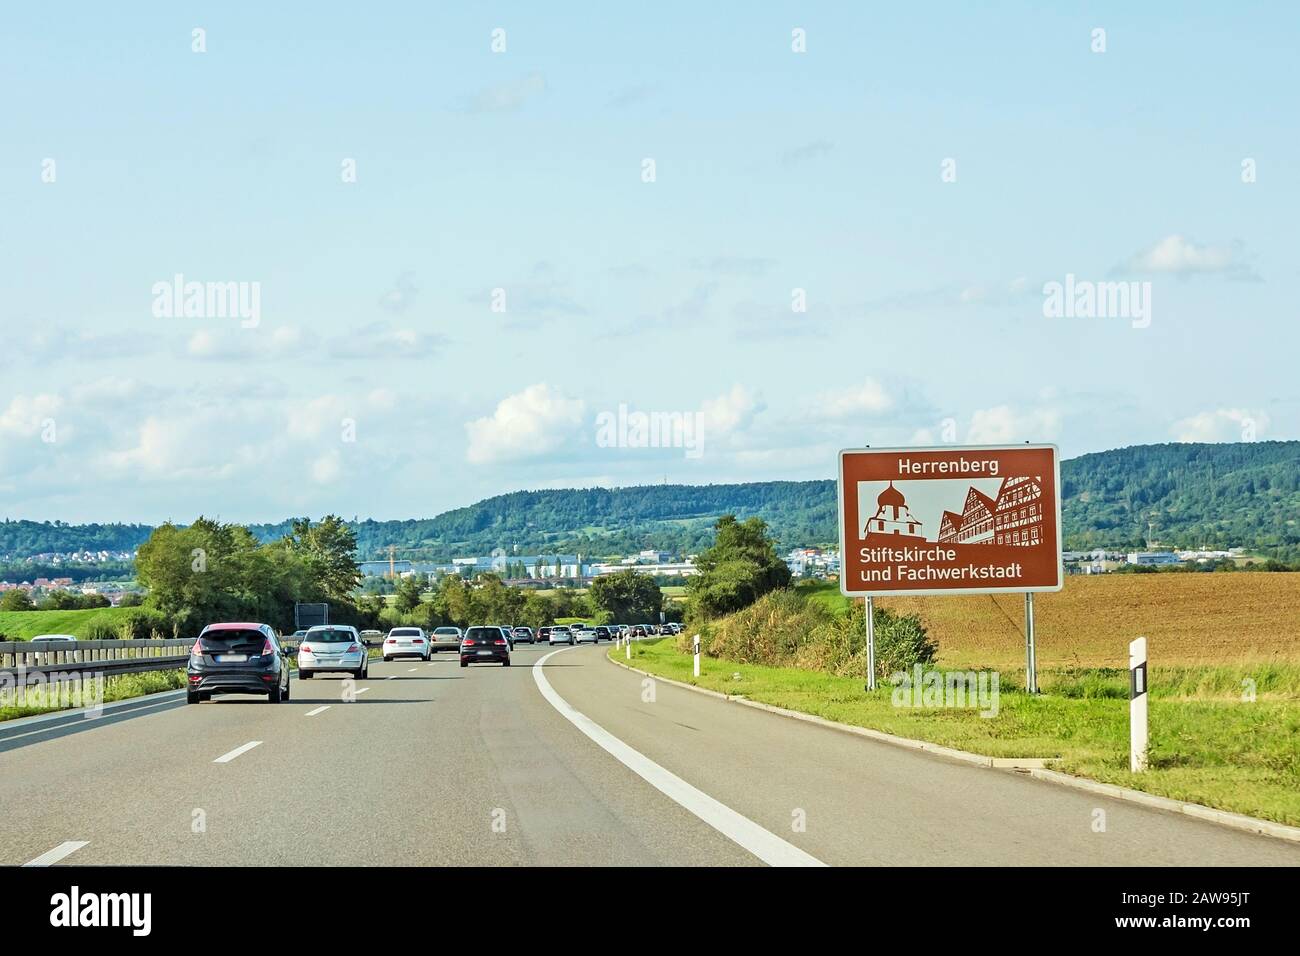 road sign city of Herrenberg 'Stiftskirche und Fachwerkstadt' at freeway, german Autobahn Stock Photo